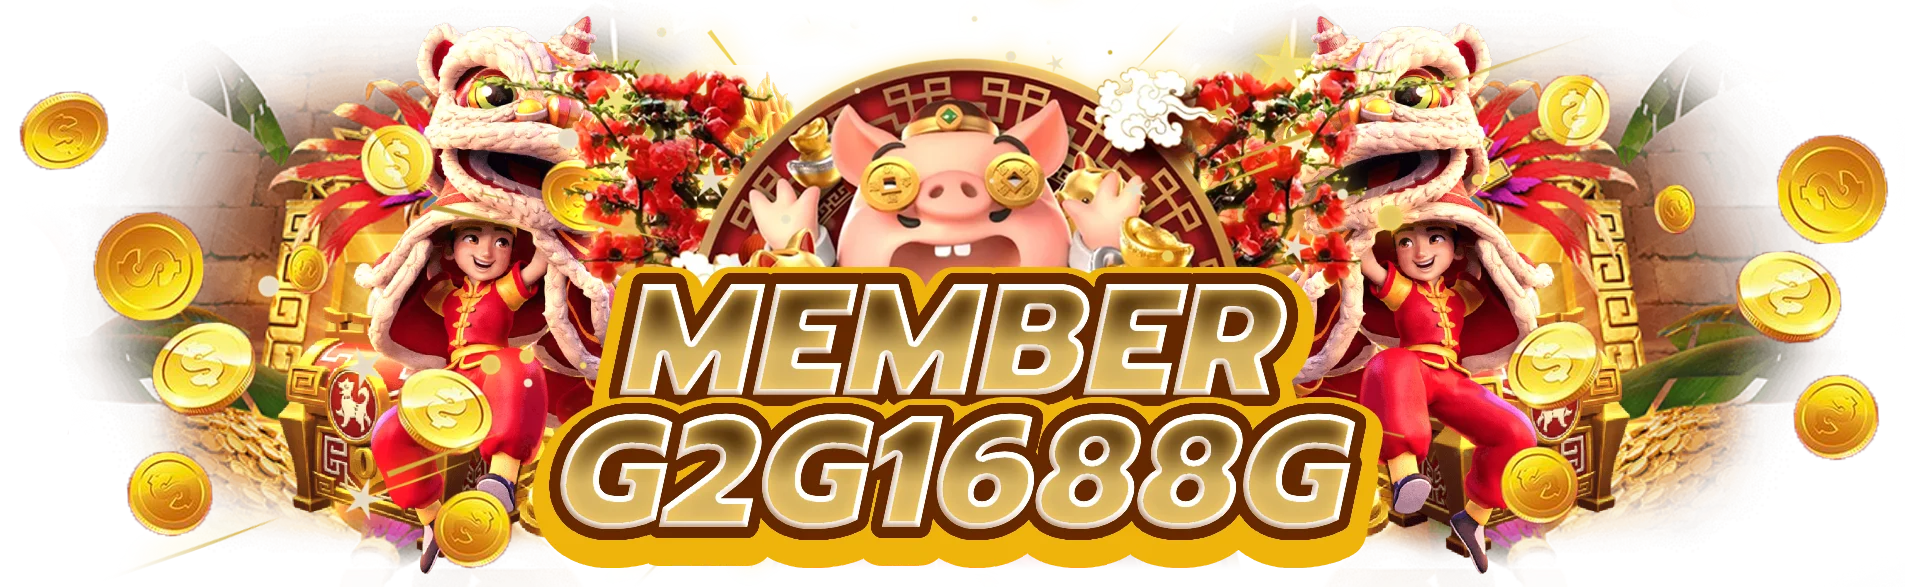 Member g2g1688g